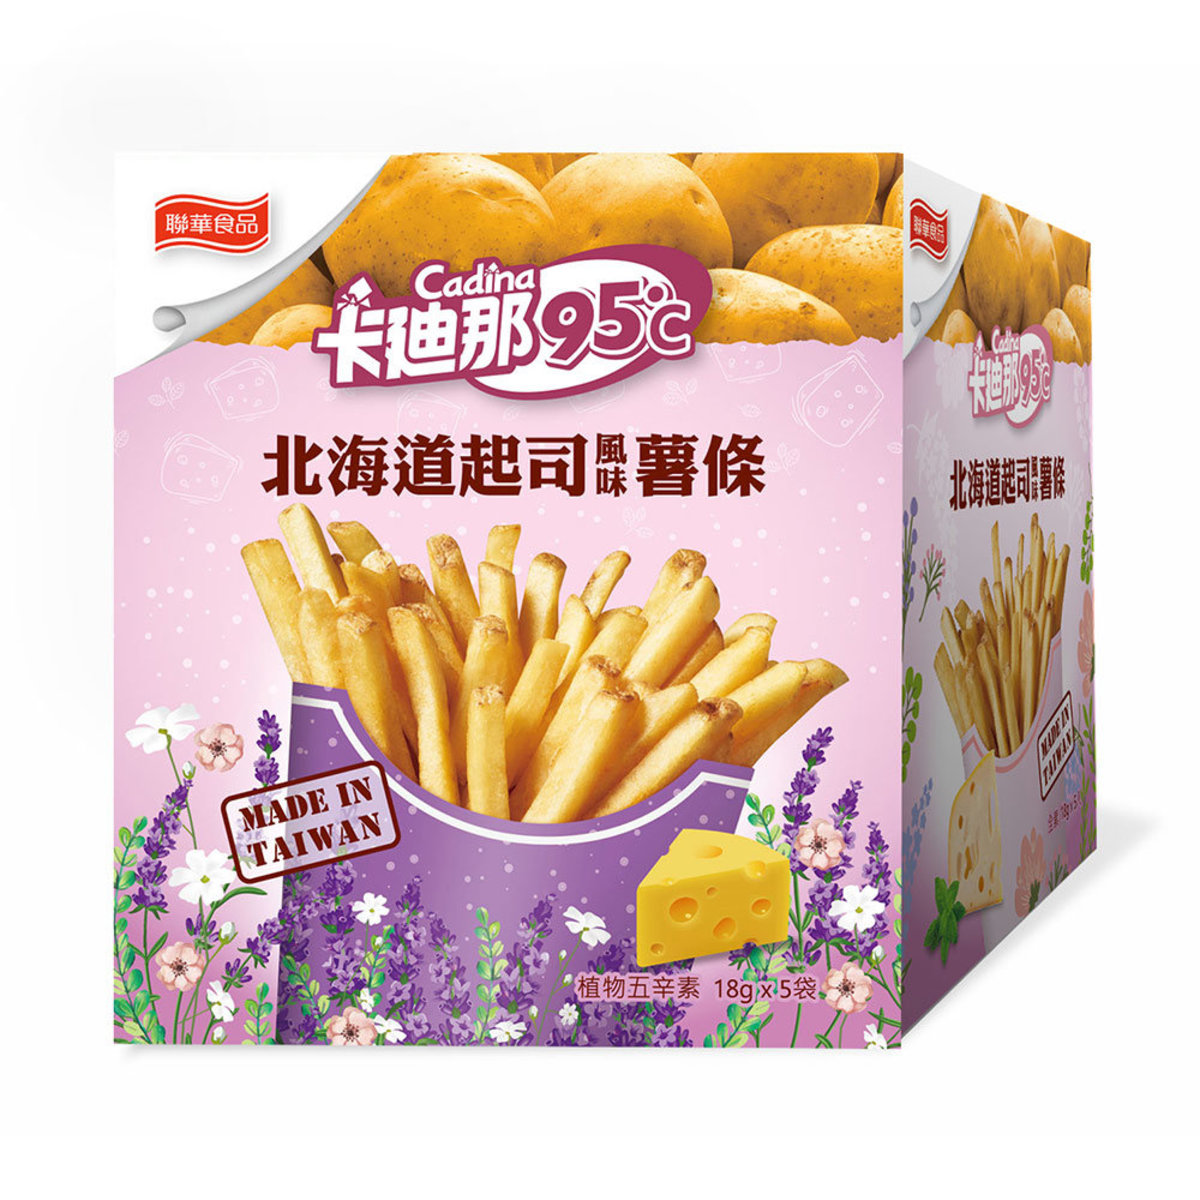 95℃ 薯條 - 北海道芝士風味 (5包/盒) 獨立包裝 [食用期限：2024年6月26日]